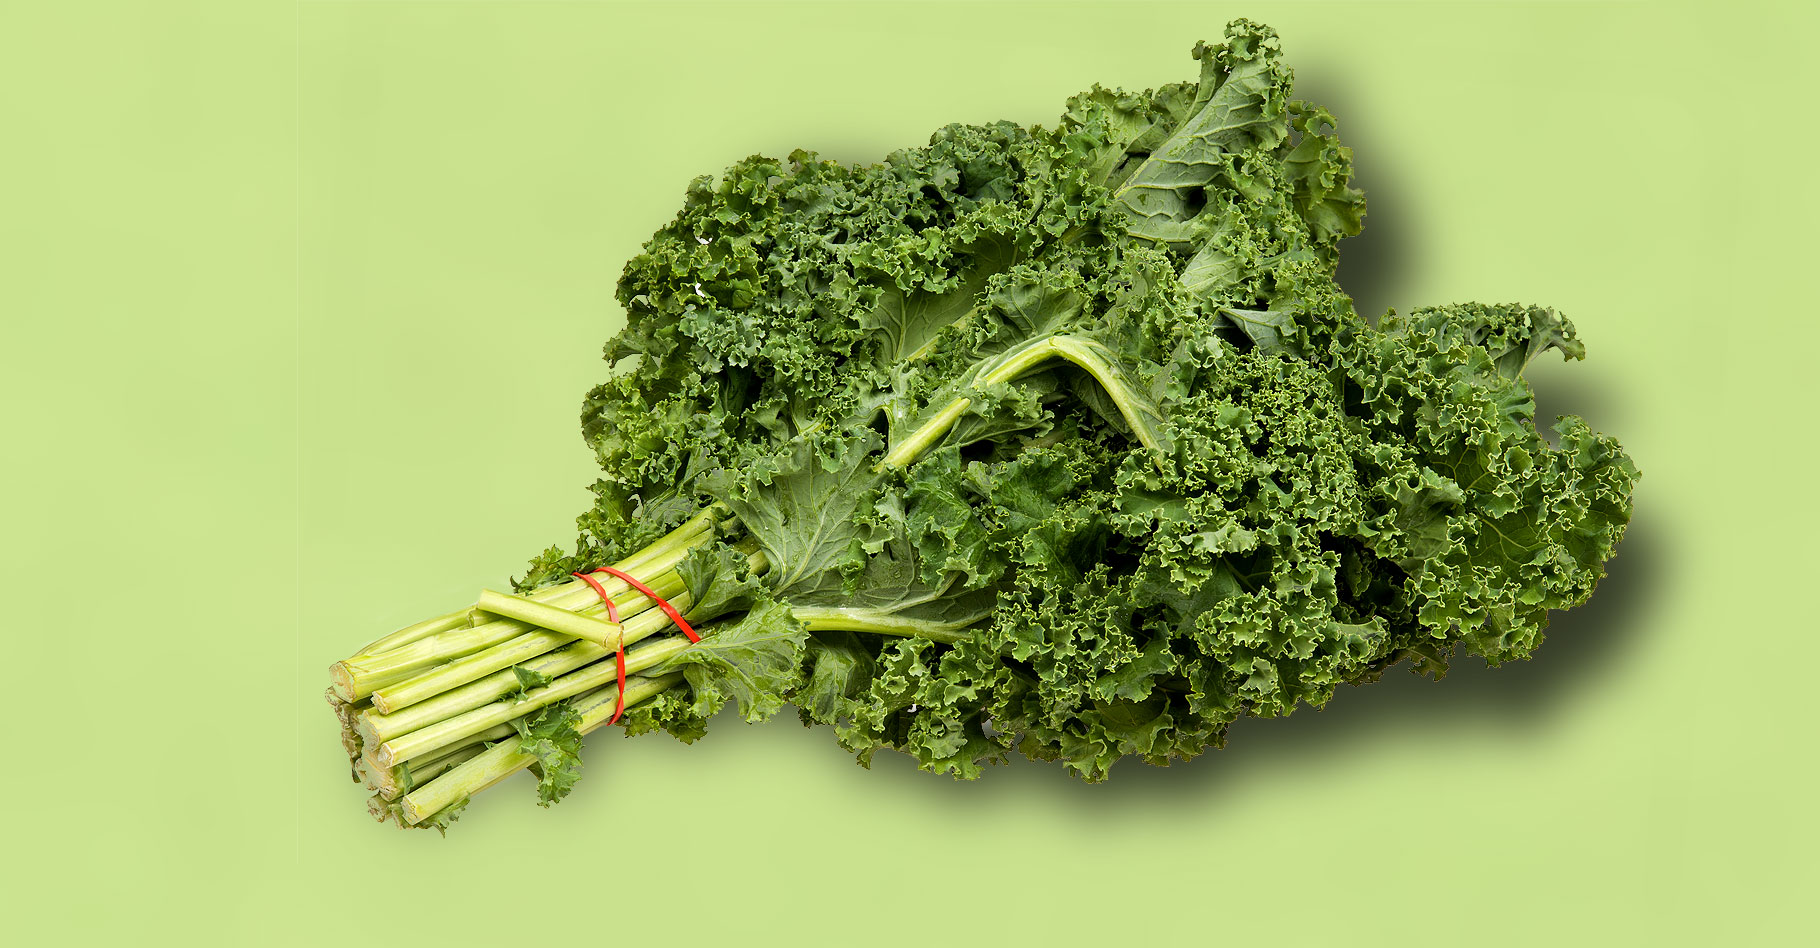 Le chou kale aux apports nutritifs impressionnants. © Evan-Amos, Wikimedia commons, Domaine Public